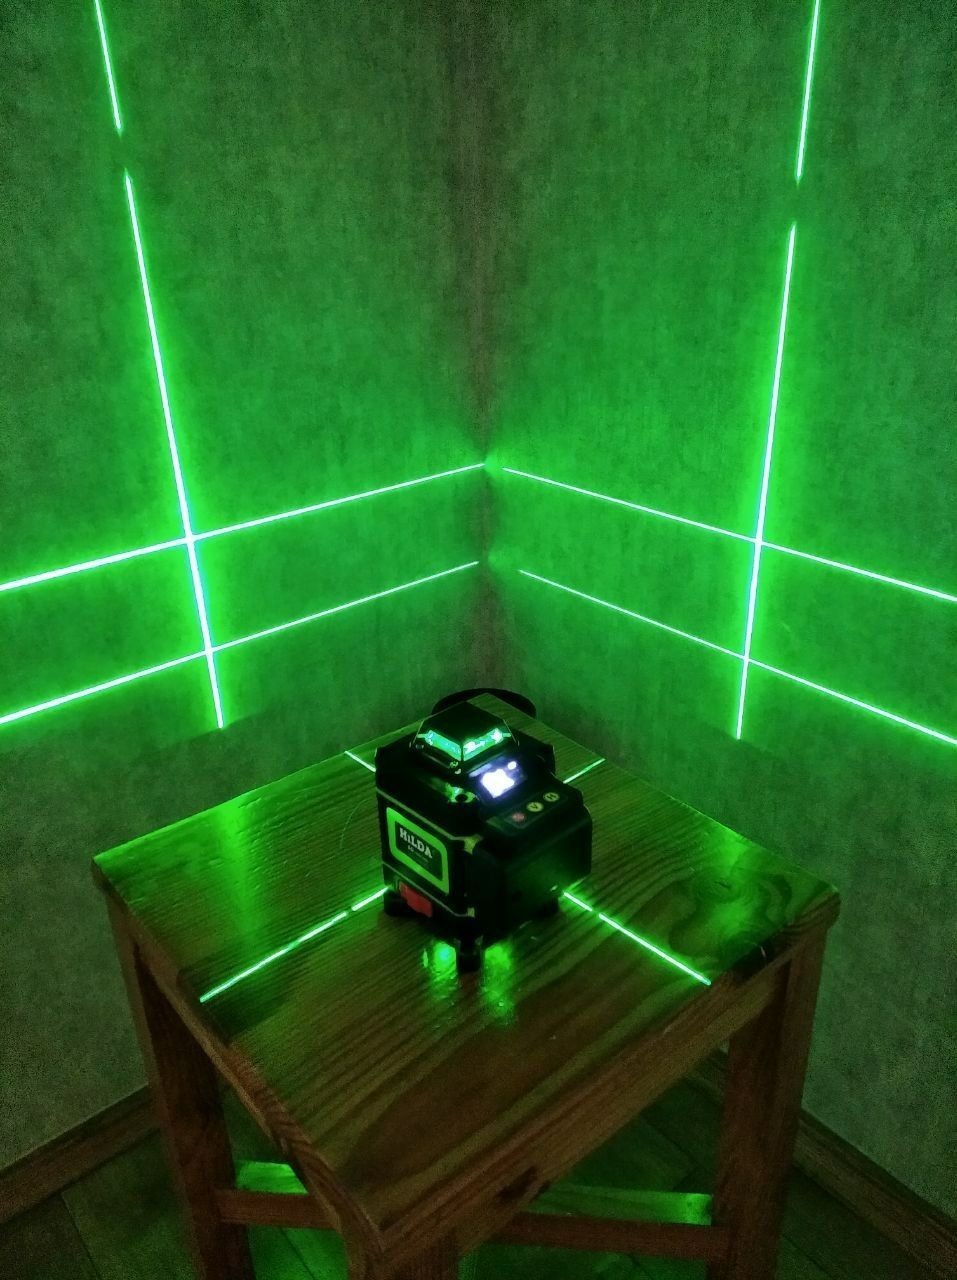 Лазерний рівень нівелір 4D Hilda MAX Light